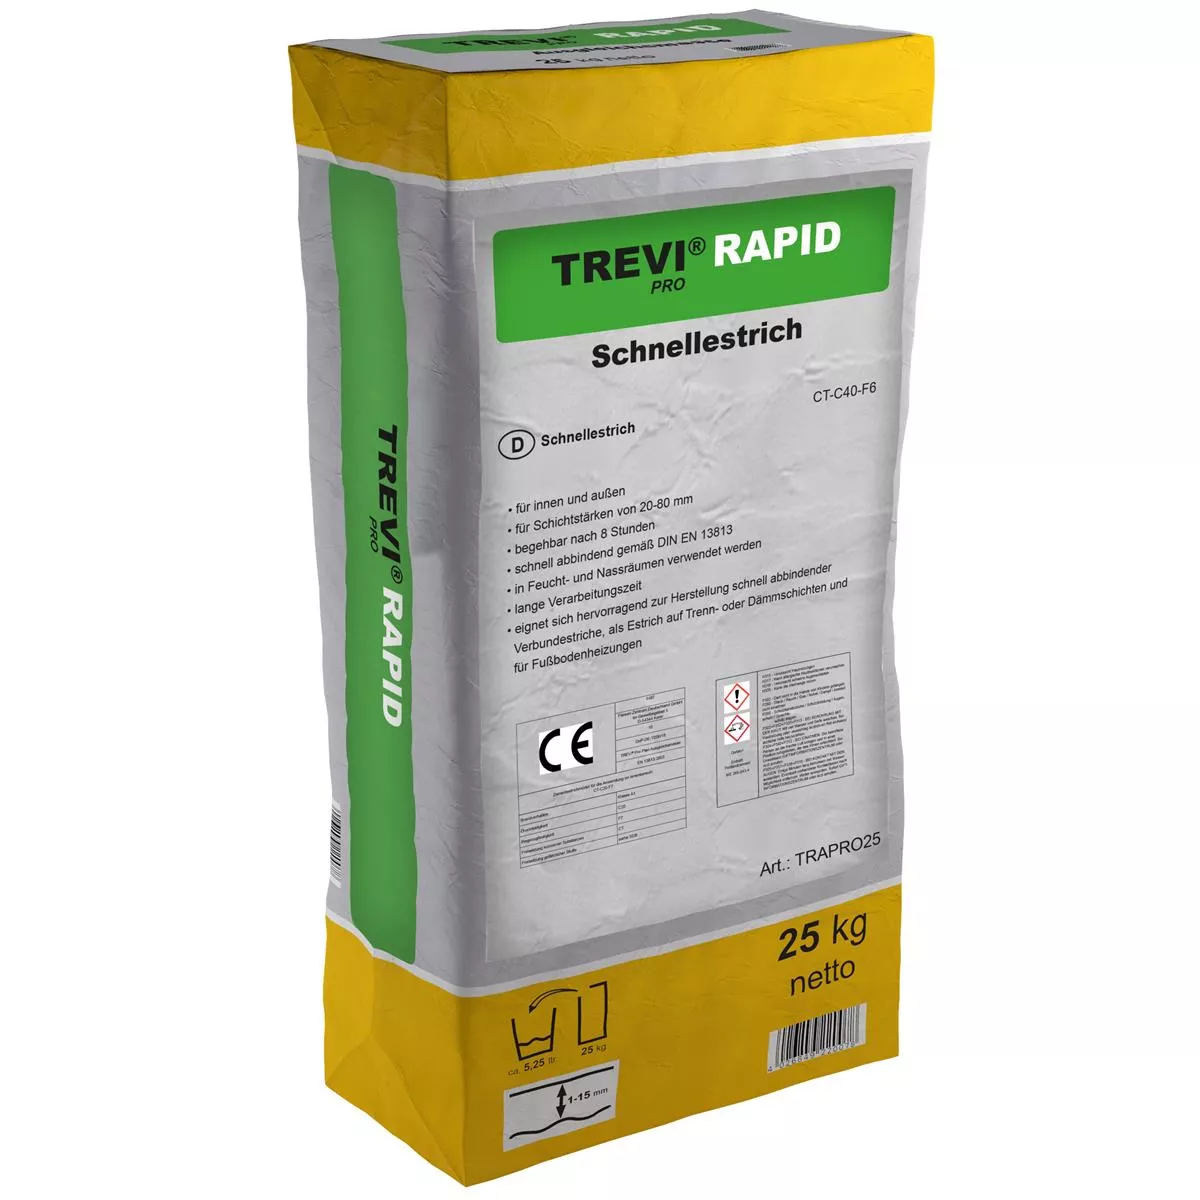 Trevi Pro Rapid gyorsan kötő cementesztrich (25KG)